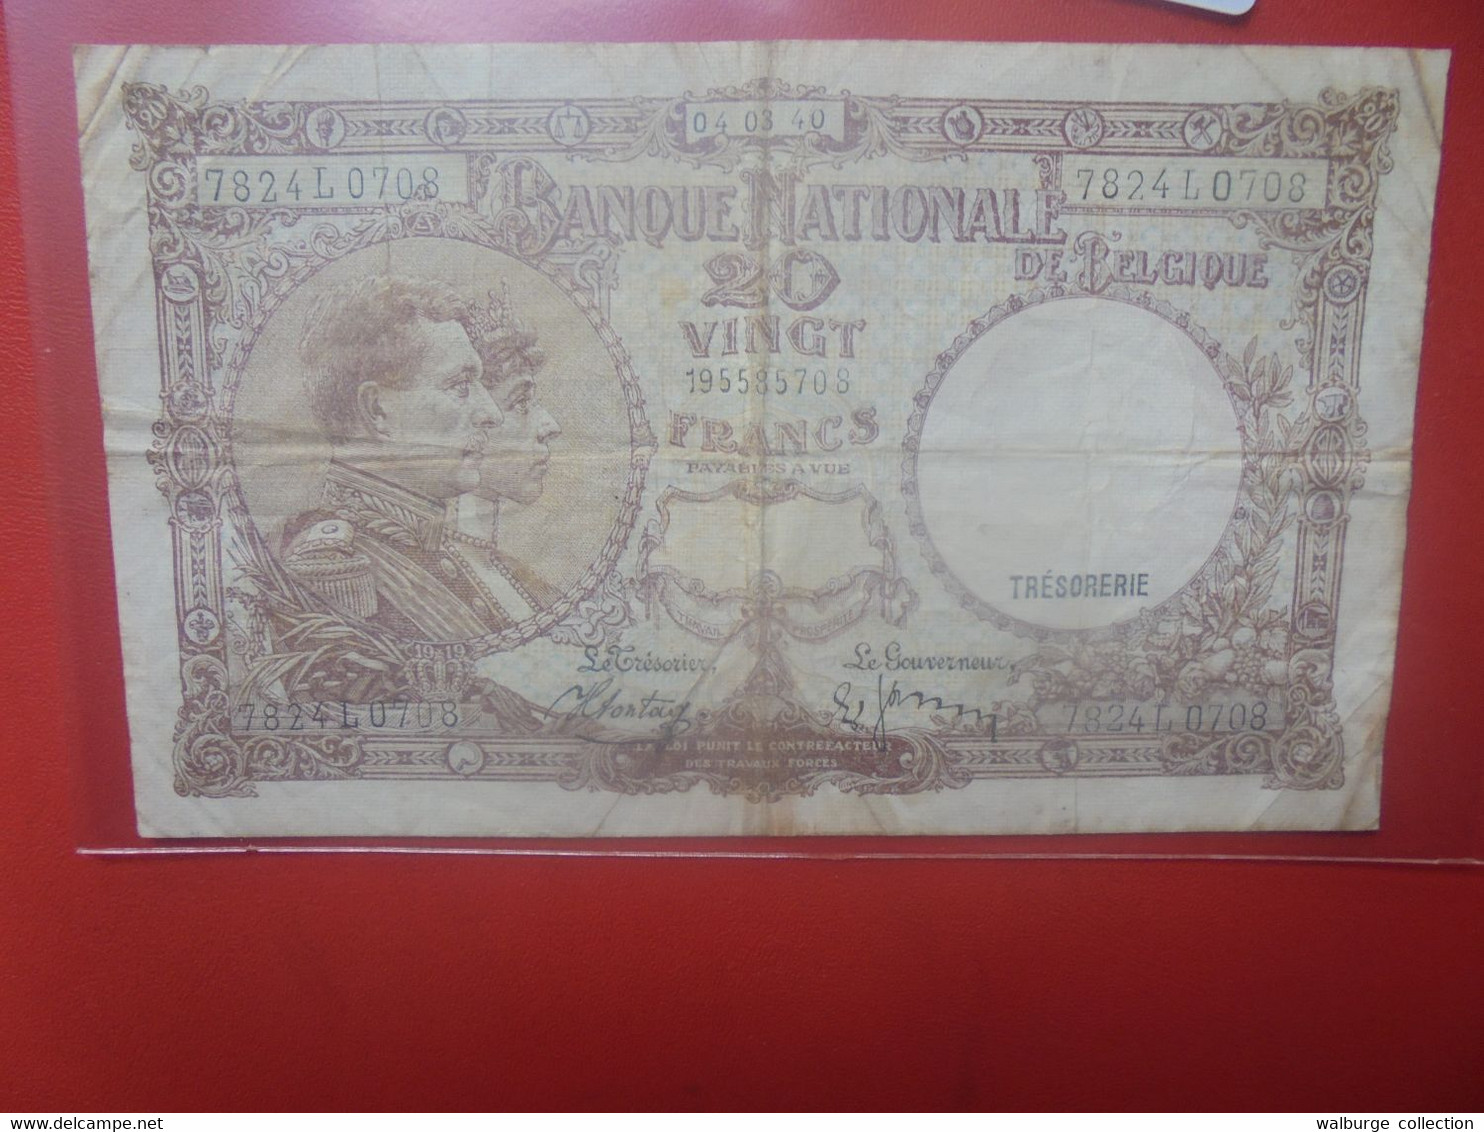 BELGIQUE 20 FRANCS 04-03-1940 DATE RARE Circuler (B.18) - 20 Francs